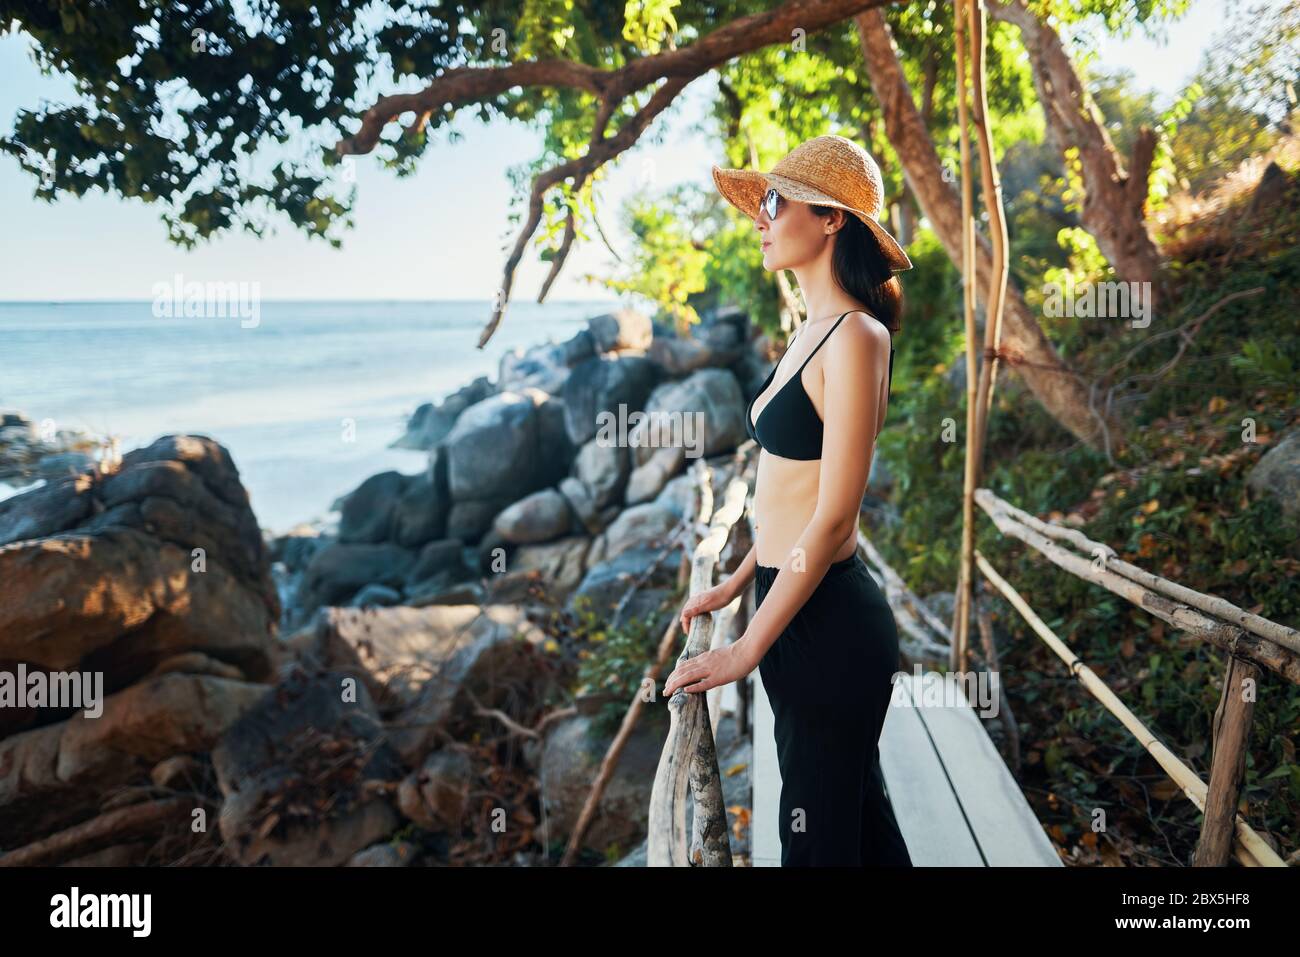 Jeune femme en chapeau de paille profiter de la vue sur la mer sur pont en bois dans l'île tropicale avec rétroéclairage. Vacances, détente, concept de voyage Banque D'Images